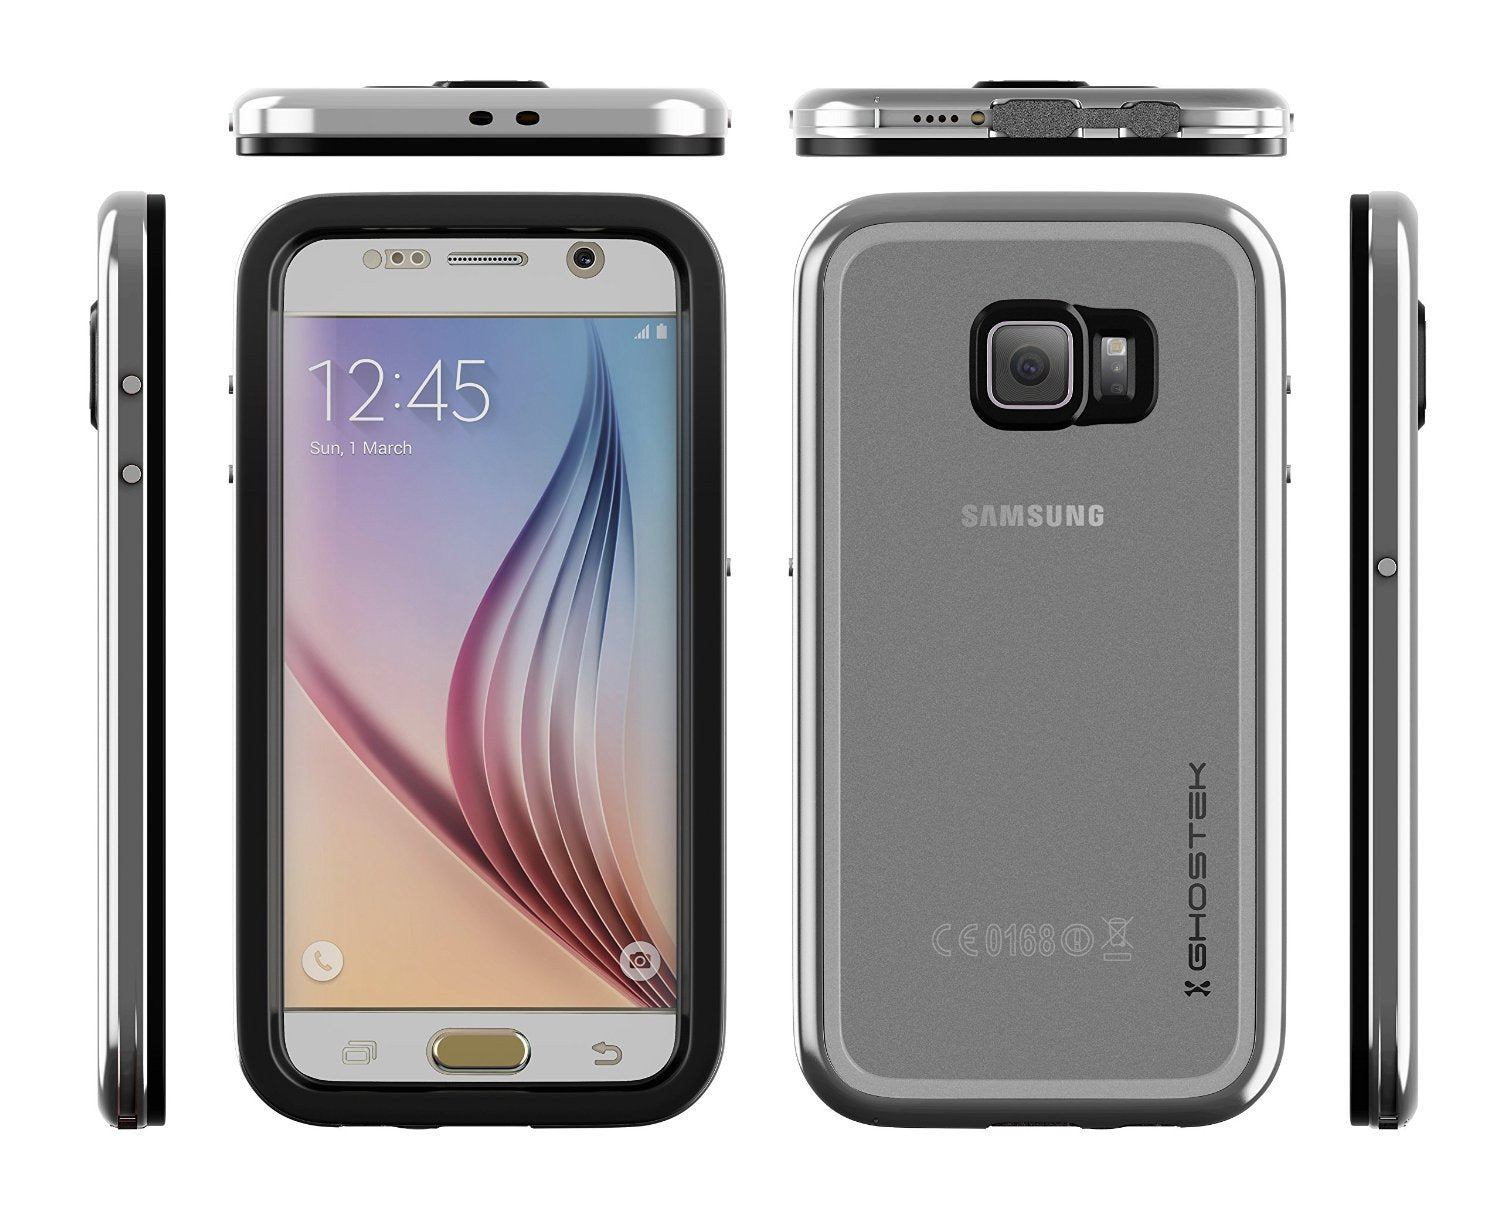 Galaxy S6 Waterproof Case, Ghostek Atomic 2.0 Silver Water/Shock/Dirt/Snow Proof | Lifetime Warranty - PunkCase NZ